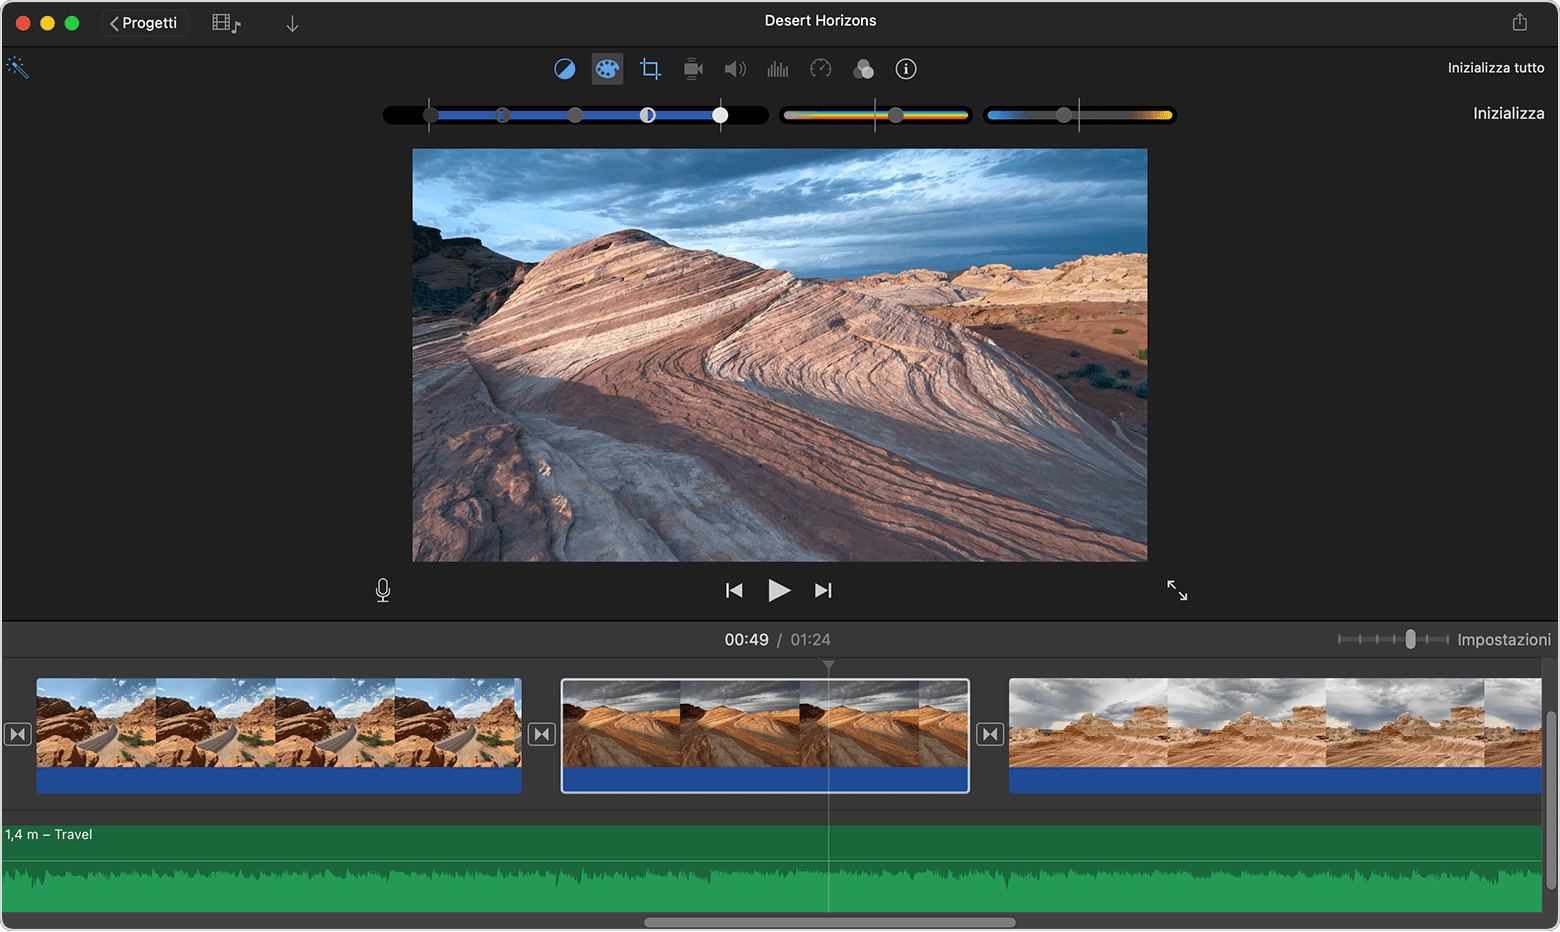 Finestra del progetto iMovie per Mac con i controlli di correzione del colore visibili